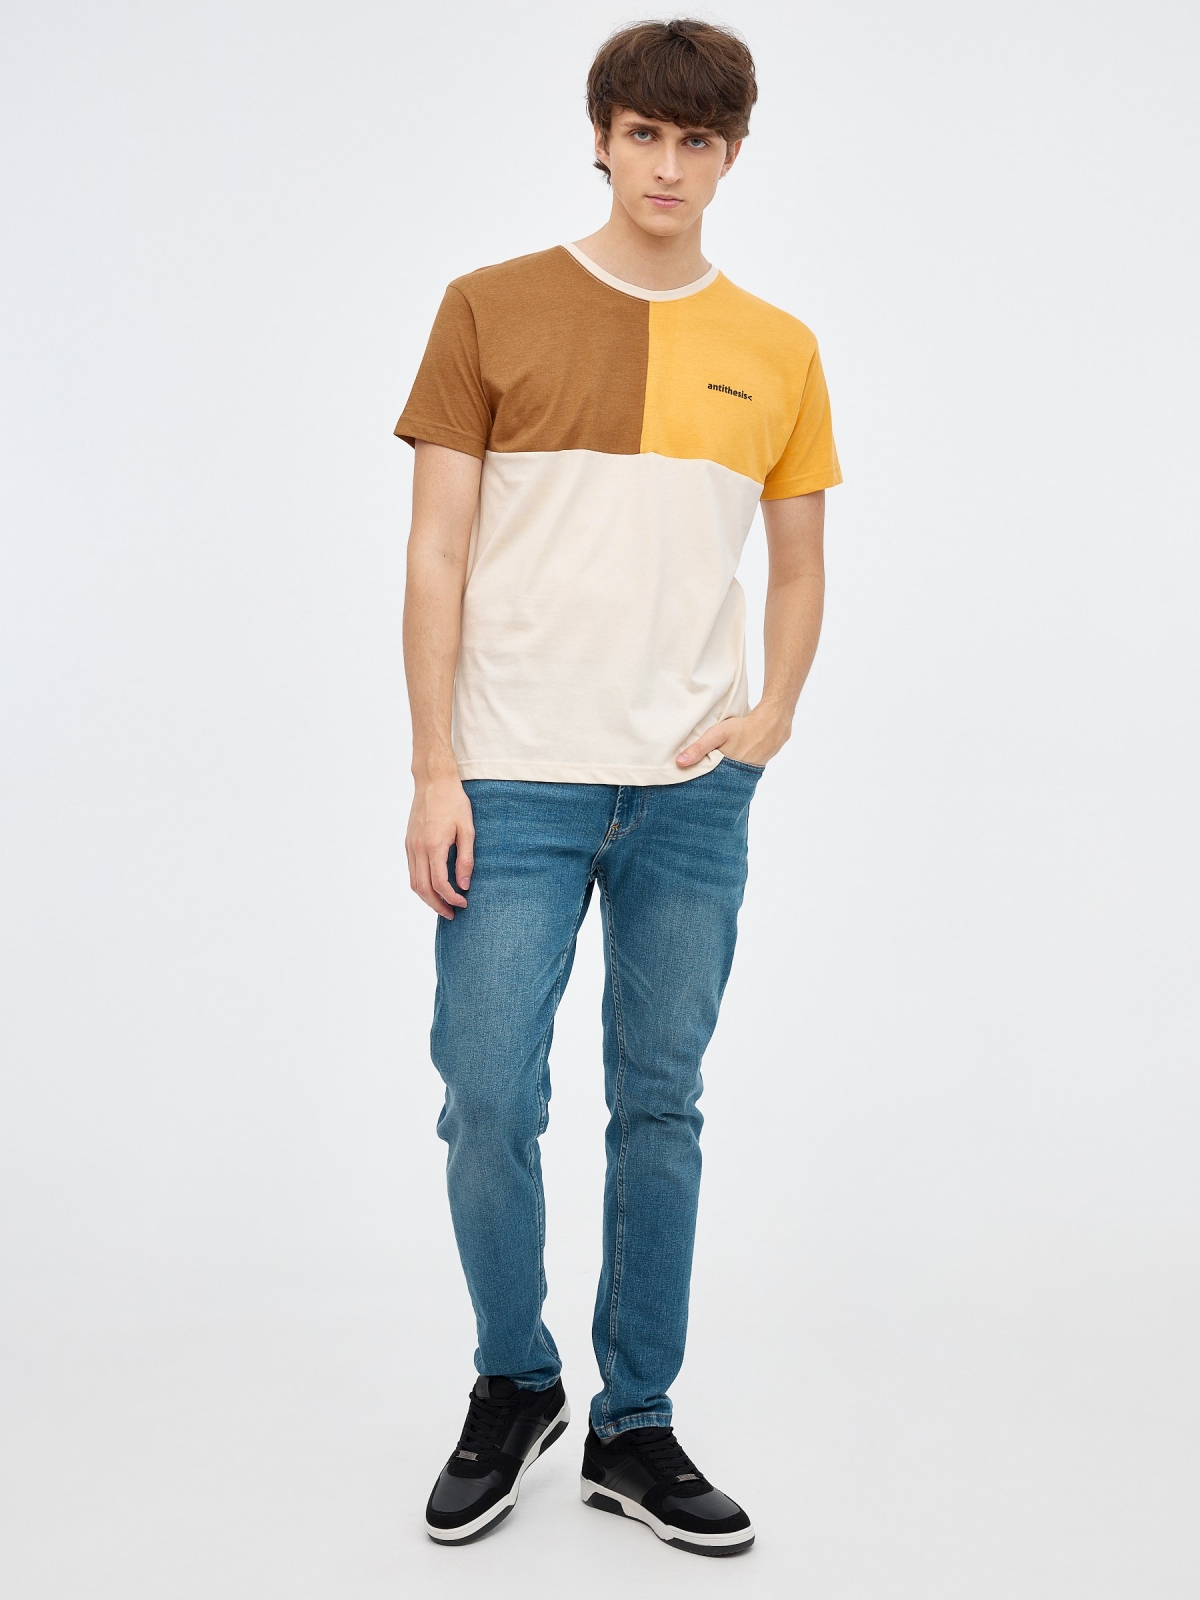 T-shirt tricolor com blocos areia vista geral frontal